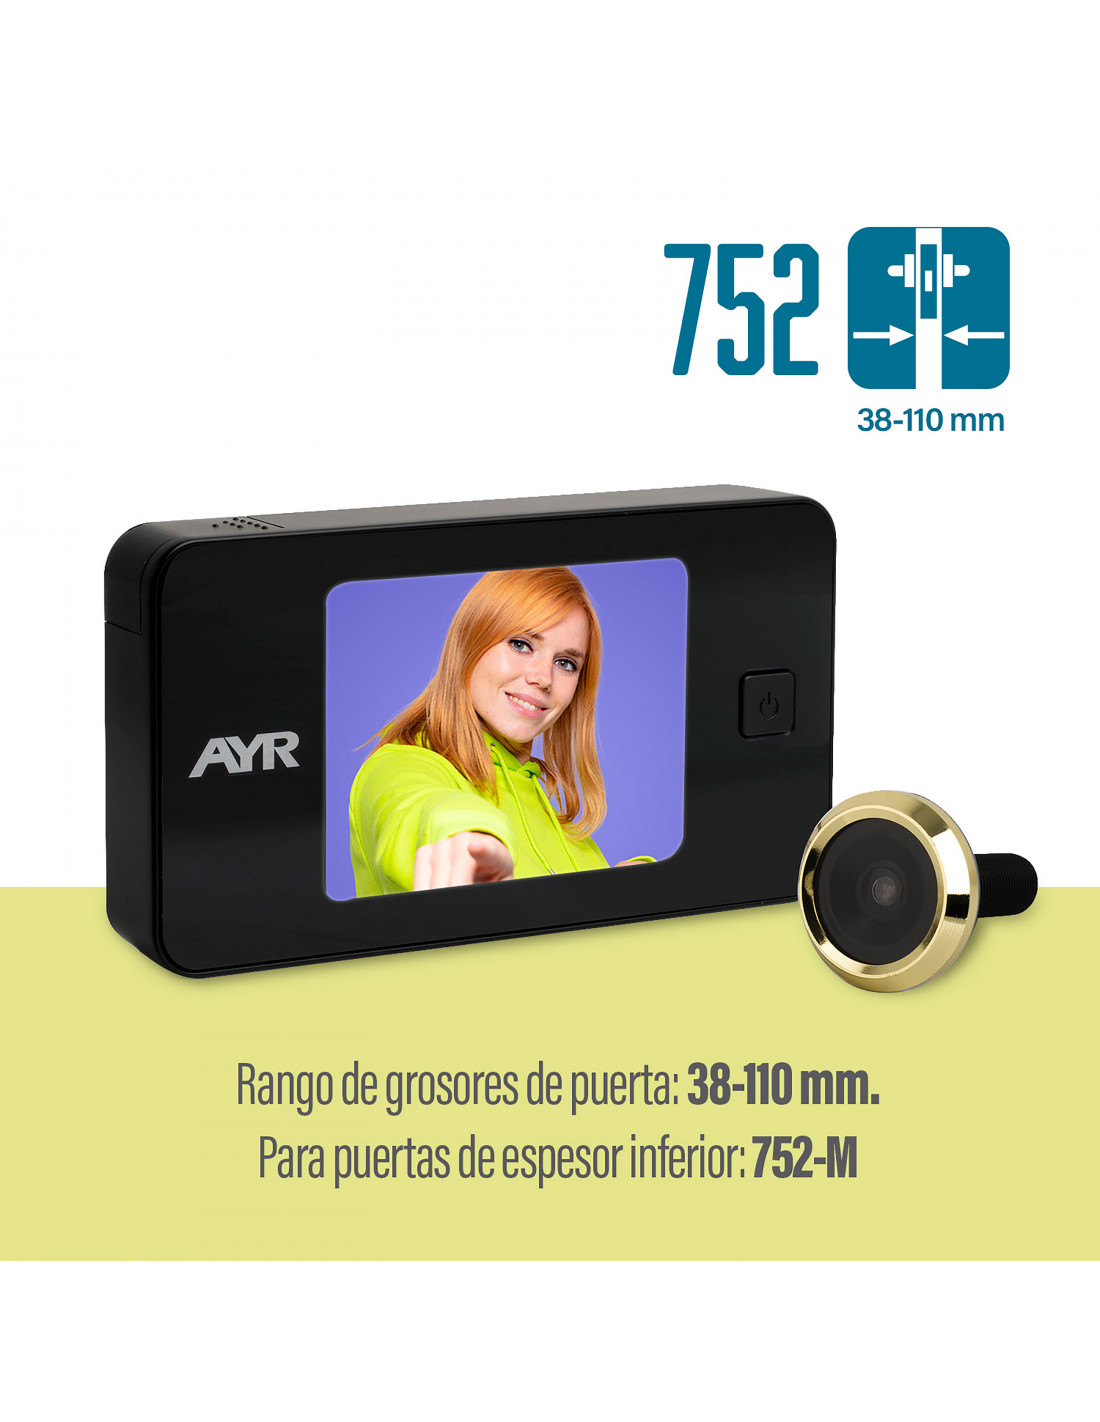 Mirilla digital AYR-754 para puertas acorazadas - Roconsa